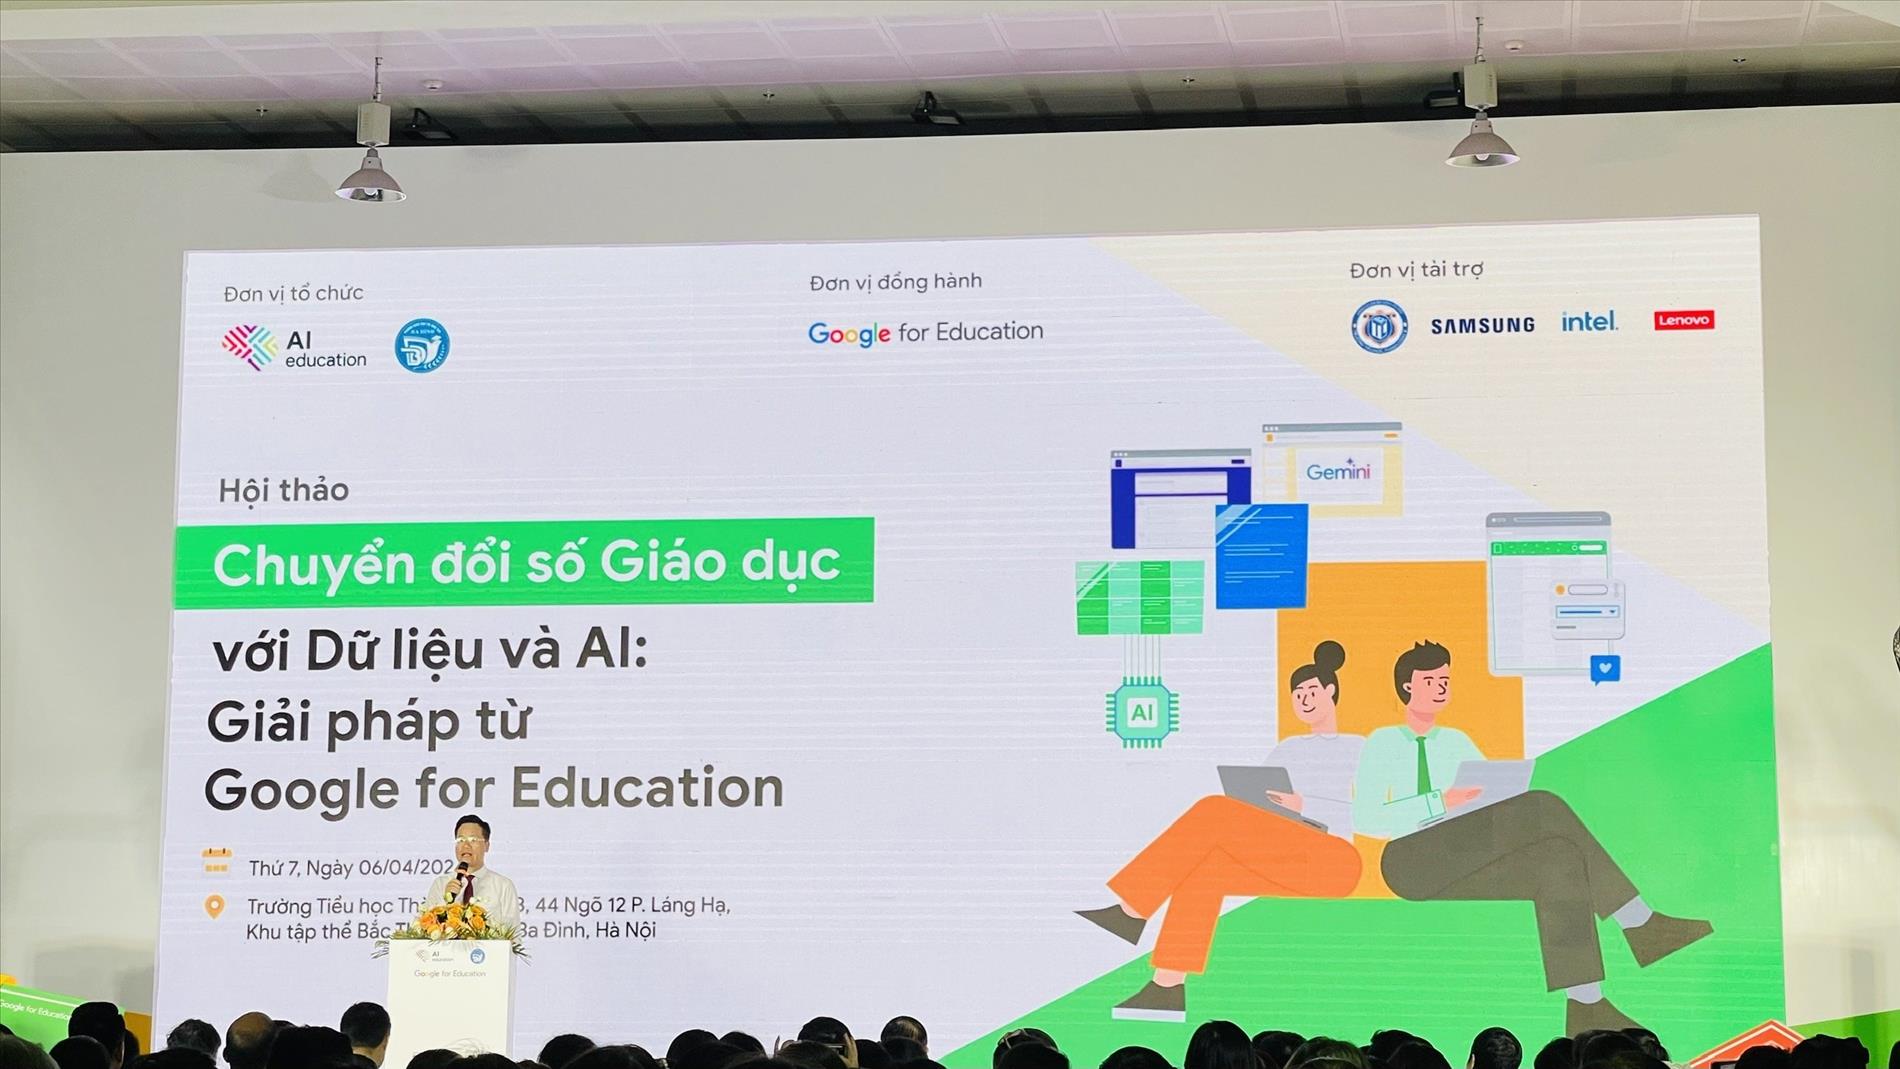 Giáo viên trường THCS Ba Đình tham dự Hội thảo “Chuyển đổi số giáo dục với dữ liệu và AI: Giải pháp từ Google for Education”